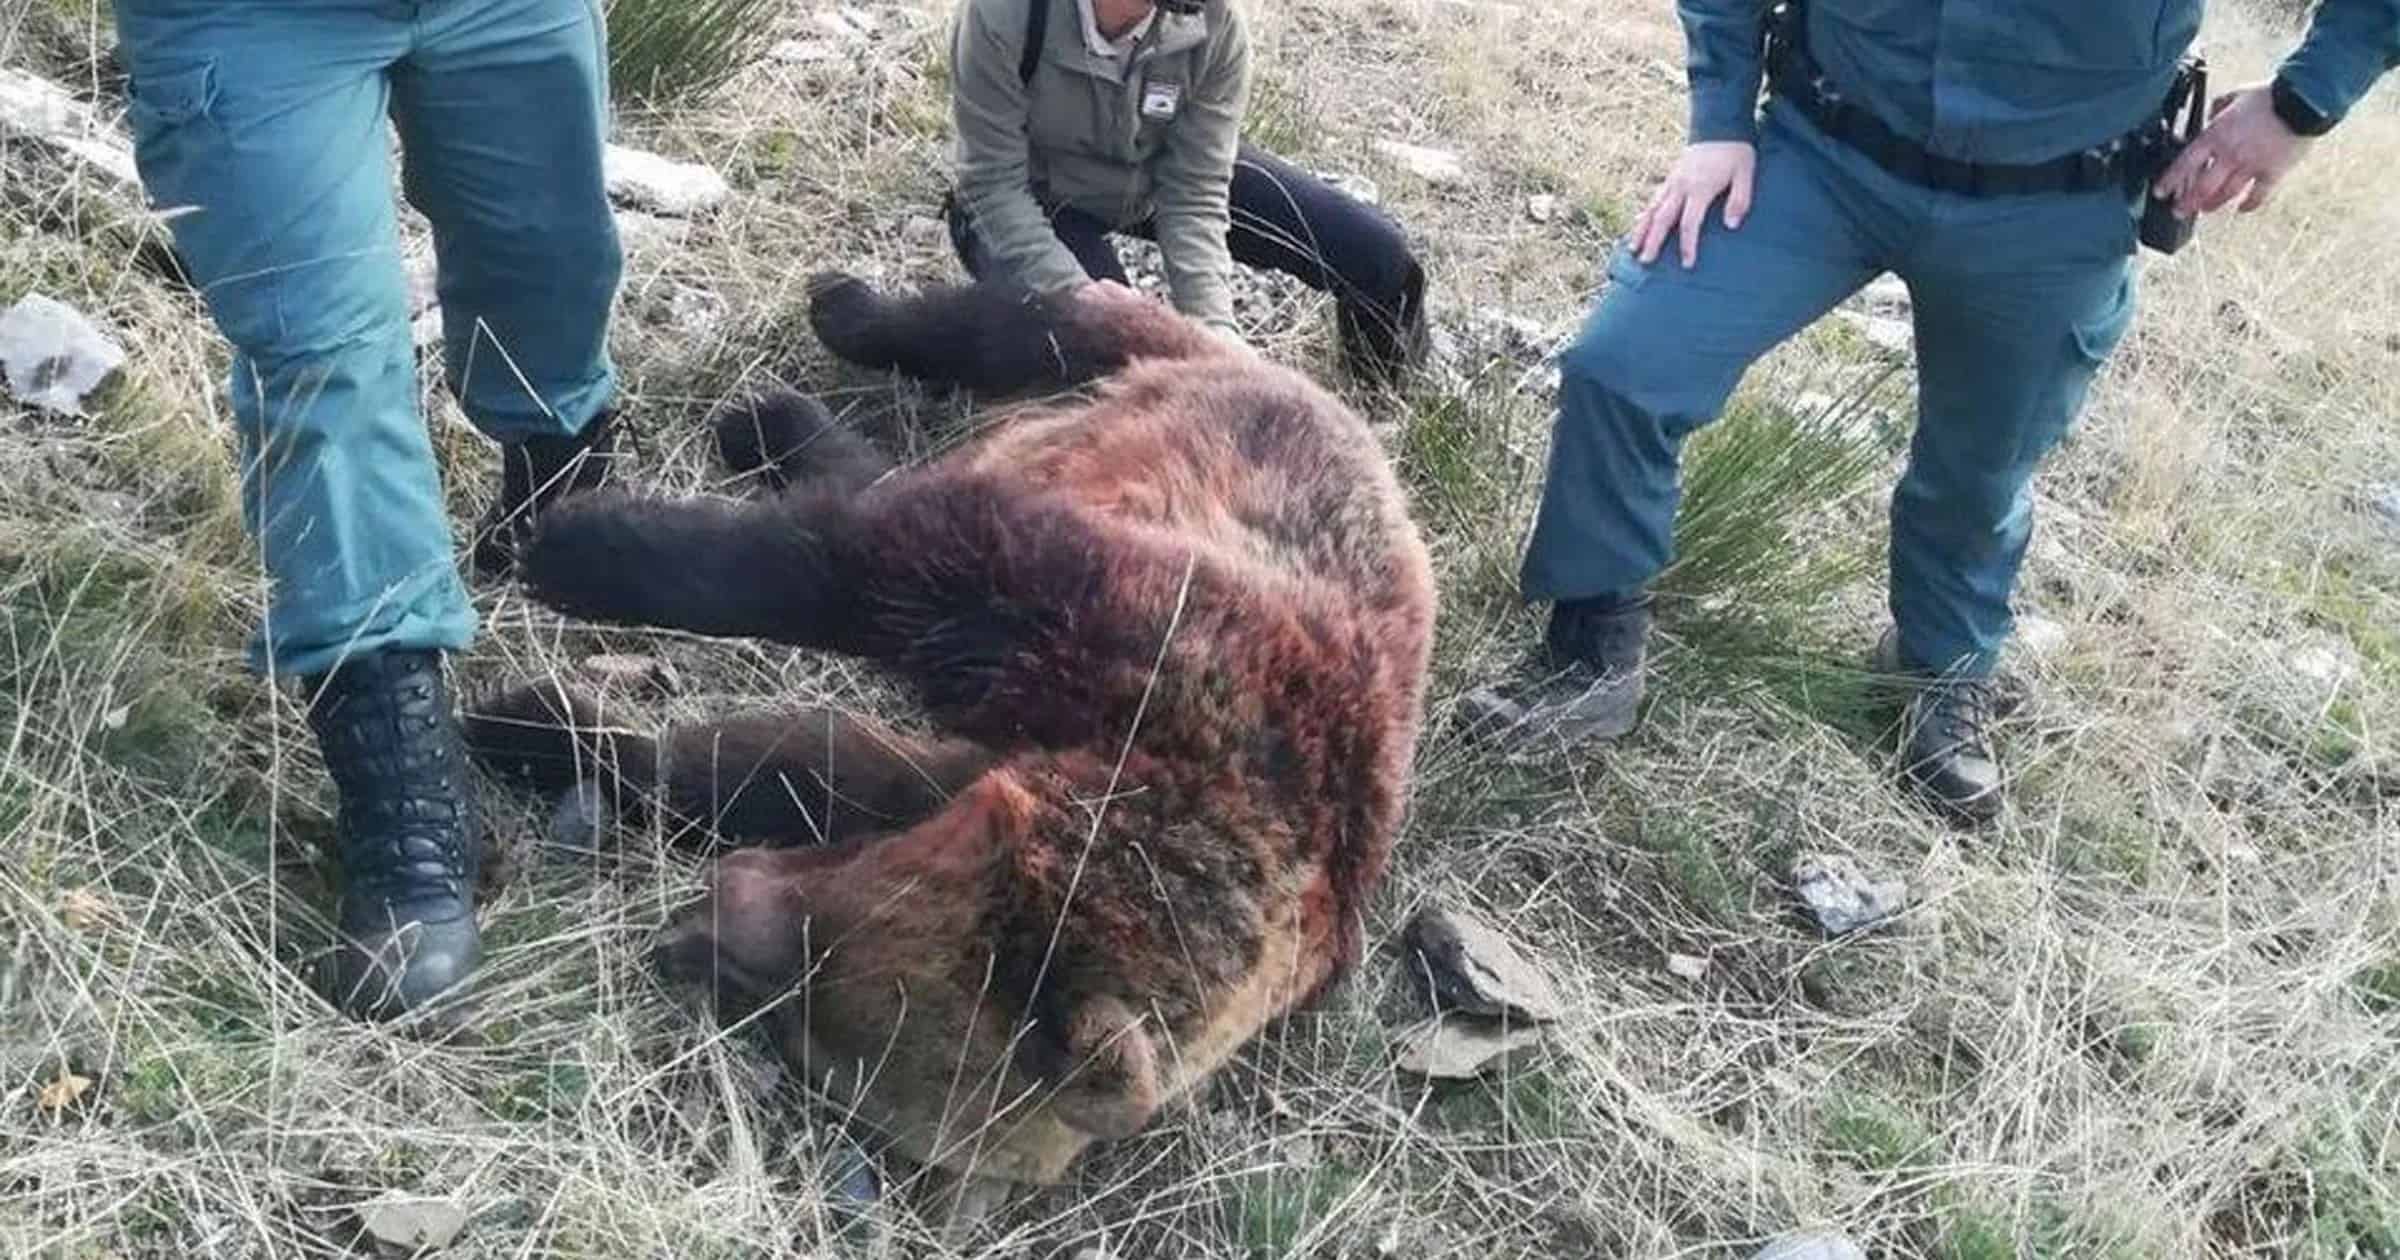 Heartbreak as brown bears are shot dead by hunters in Spain